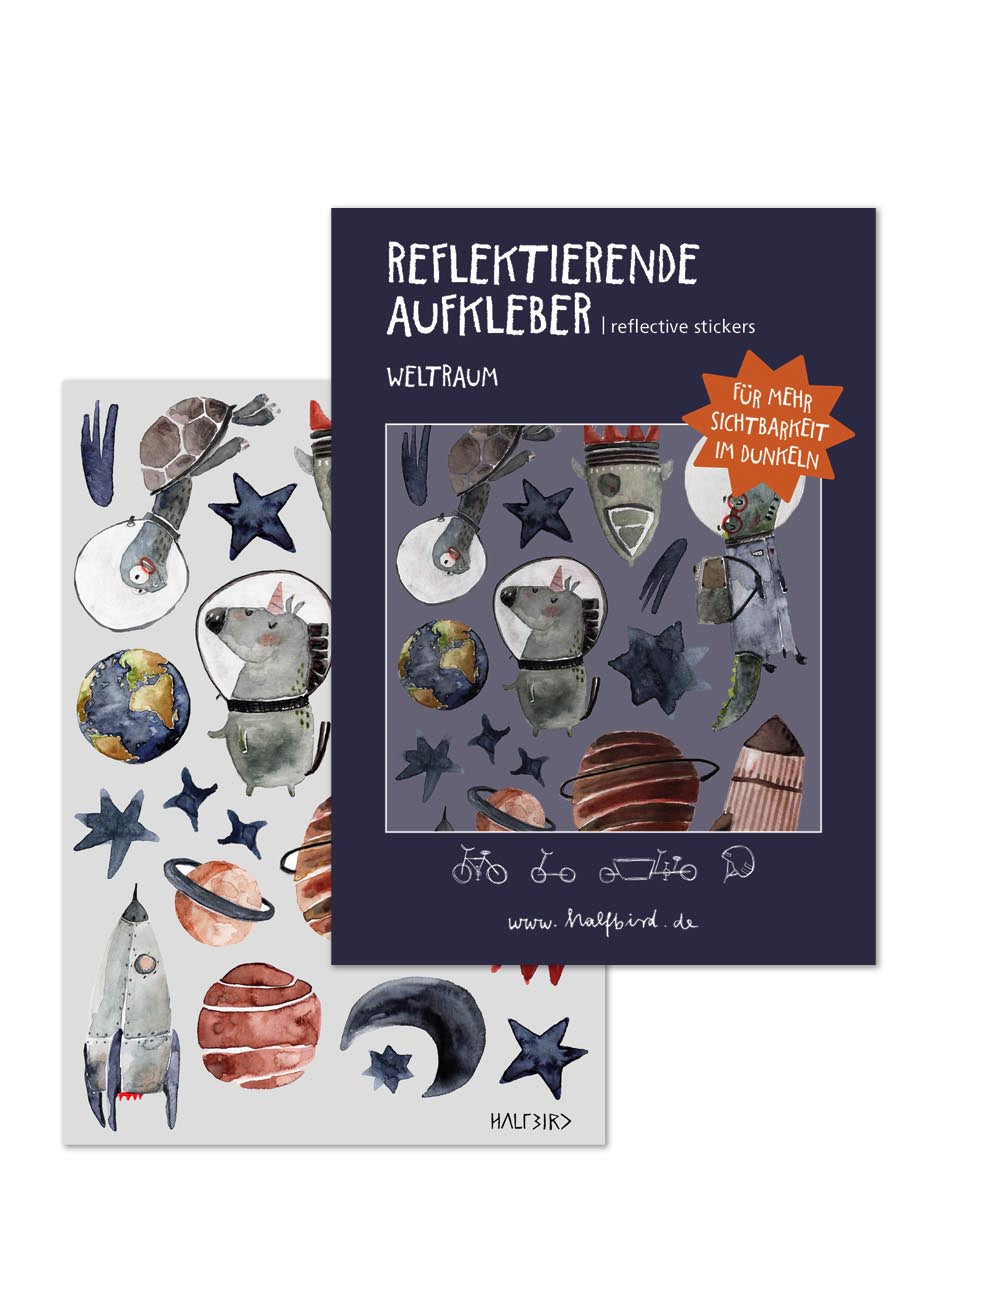 Reflex-Aufkleber Smiley online kaufen im Verlag Heinrich Vogel Shop